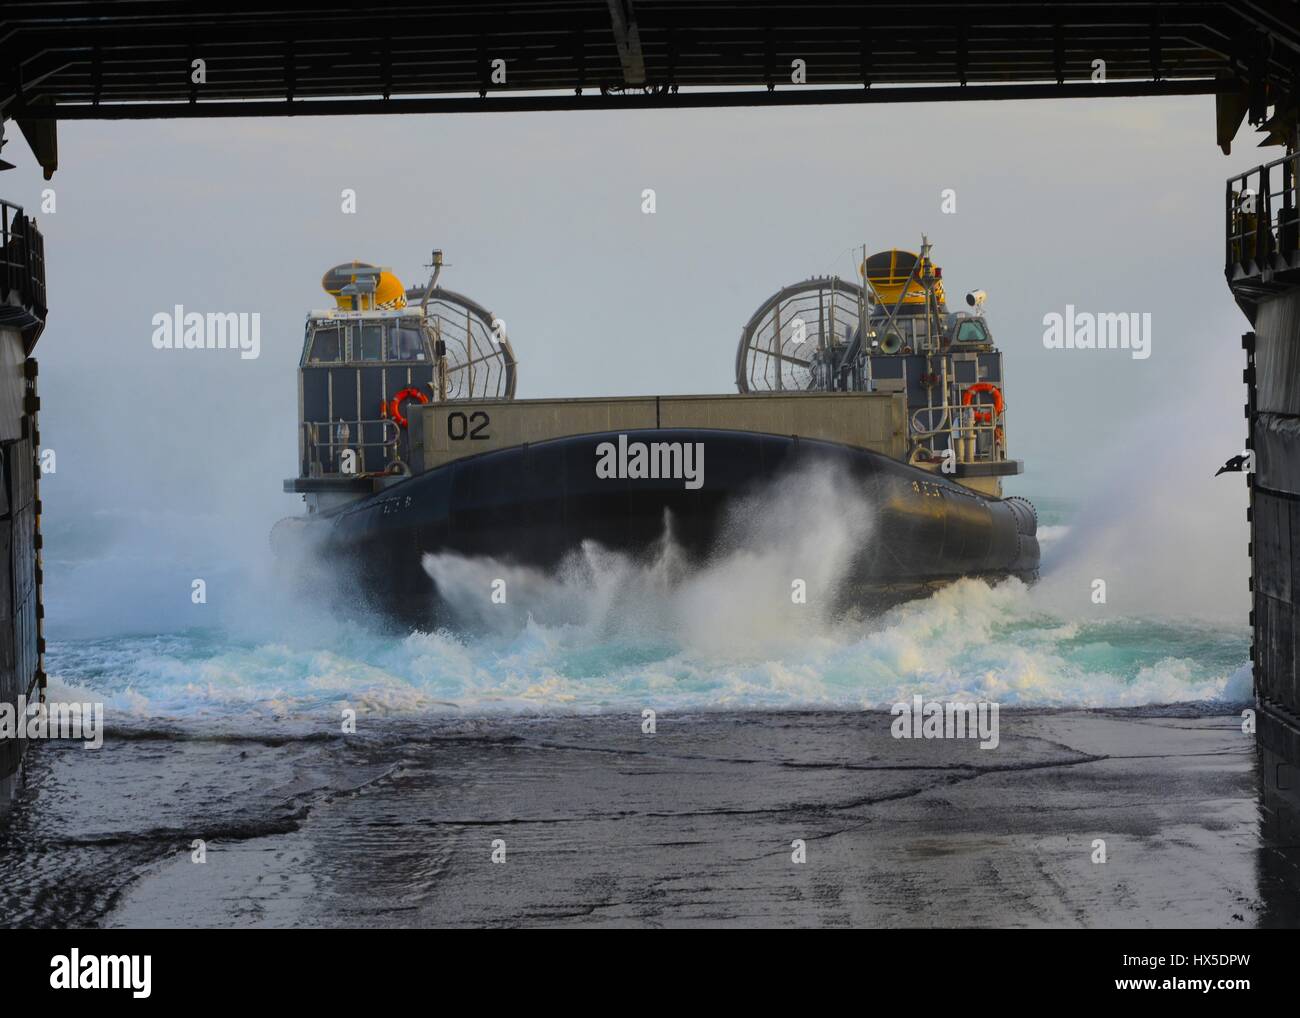 Un desembarco de cojín de aire (LCAC) entra el bien la plataforma de aterrizaje anfibio de dock buque USS Carter Hall (LSD 50), el Océano Atlántico, de 2013. Imagen cortesía de Chelsea Mandello/US Navy. Foto de stock